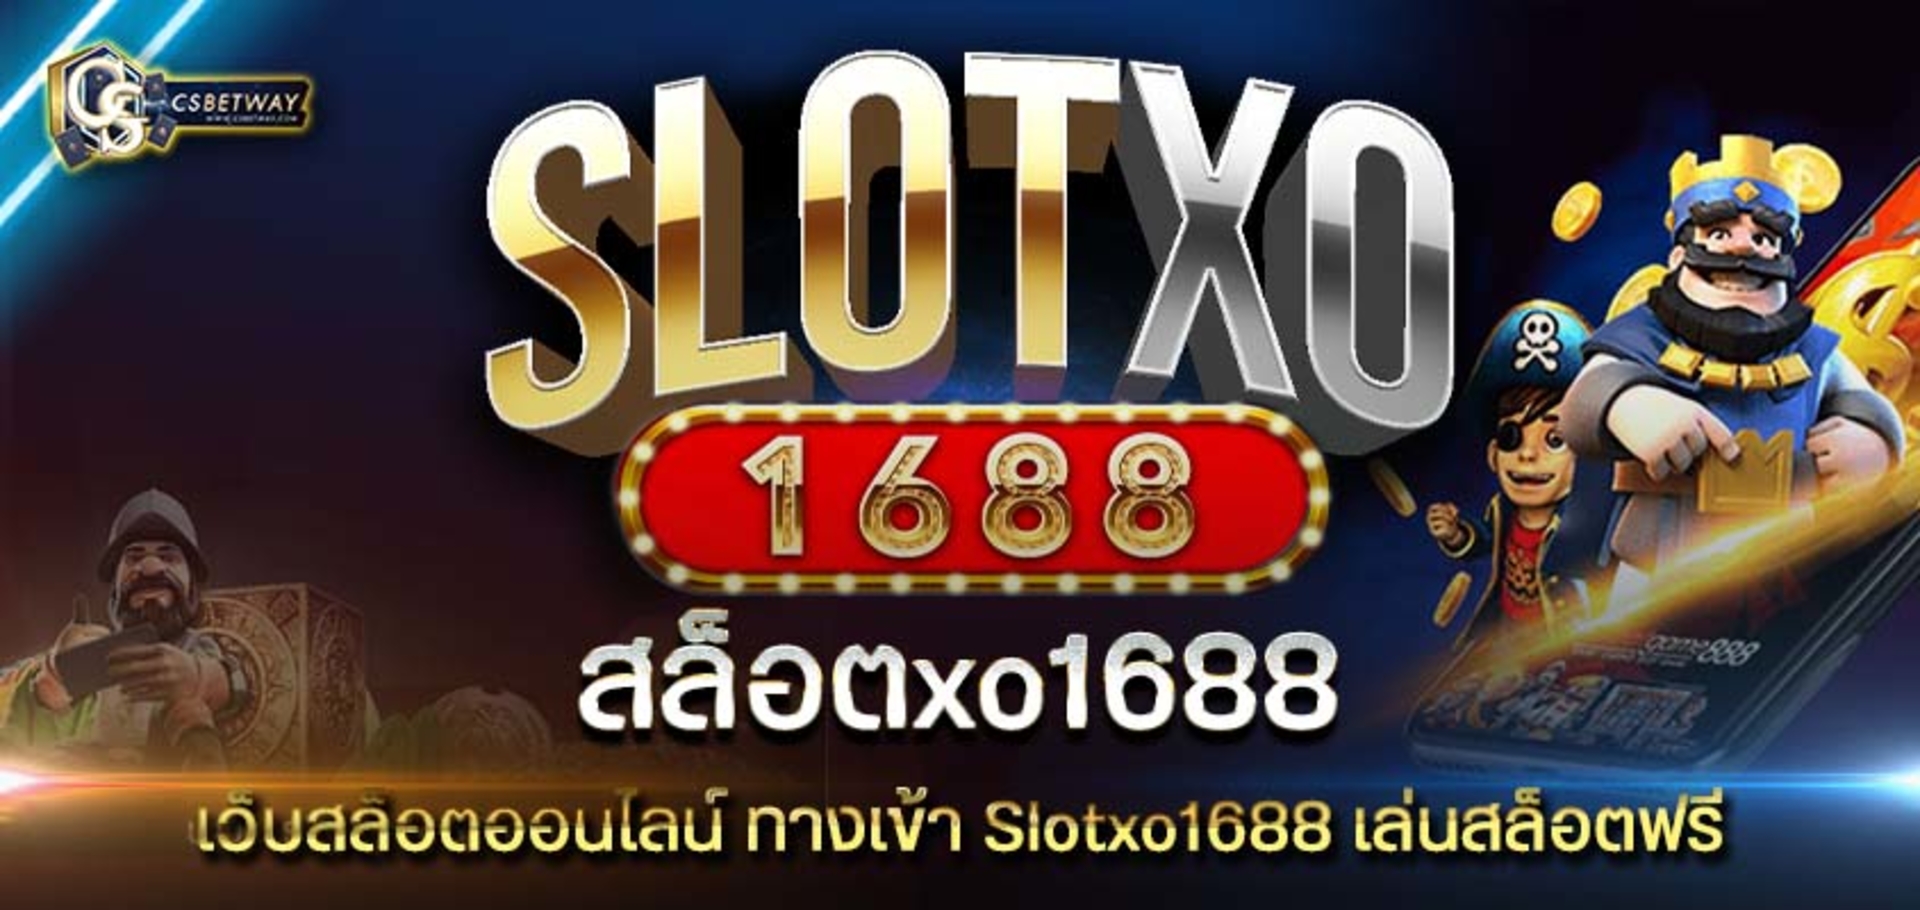 สล็อตxo1688 เว็บสล็อตออนไลน์ ทางเข้า Slotxo1688 เล่นสล็อตฟรี ไม่ต้องดาวน์โหลด